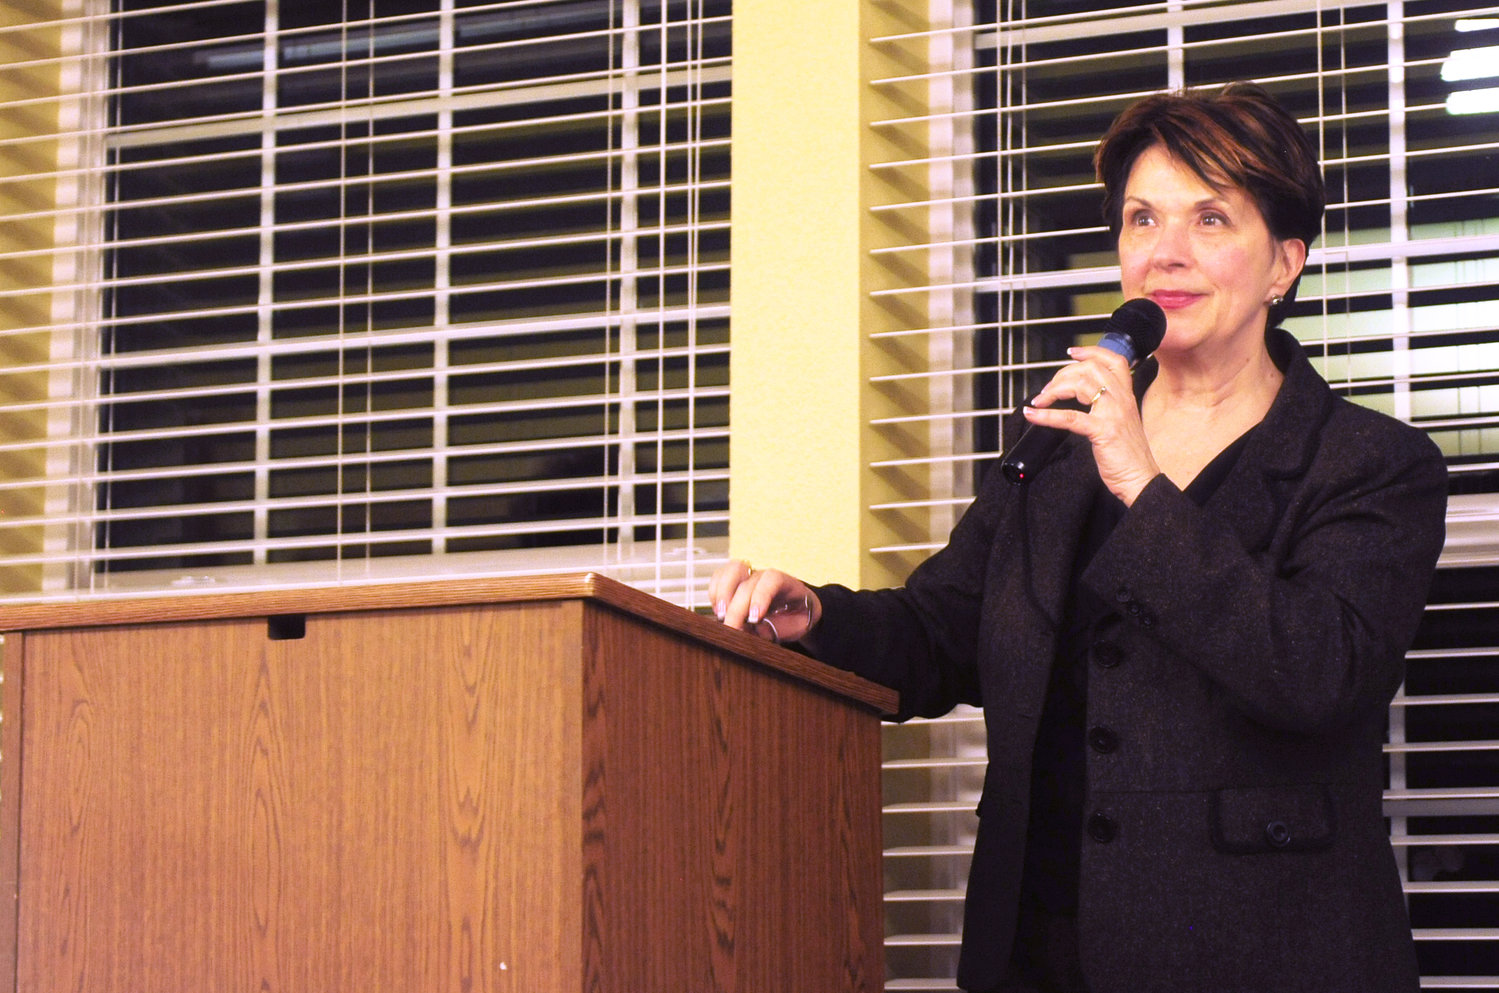 Shared Hope International  Founder Linda Smith speaks at Woodland Estates Wednesday night.